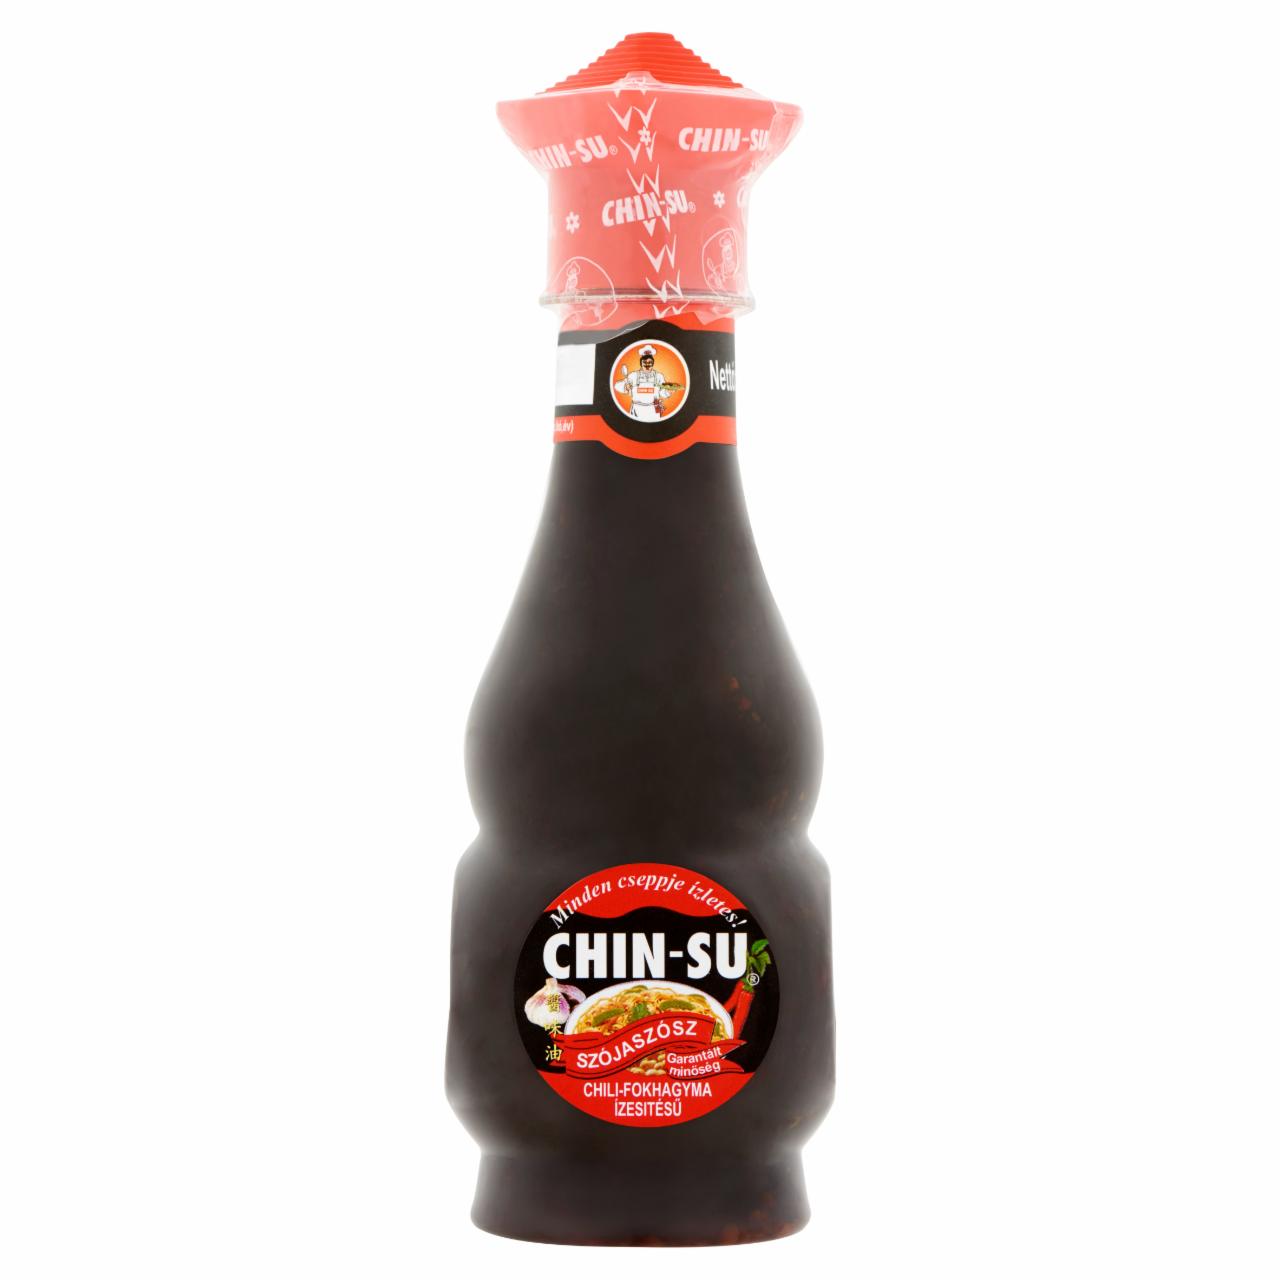 Képek - Chin-Su chilis-fokhagyma ízesítésű szójaszósz 250 ml